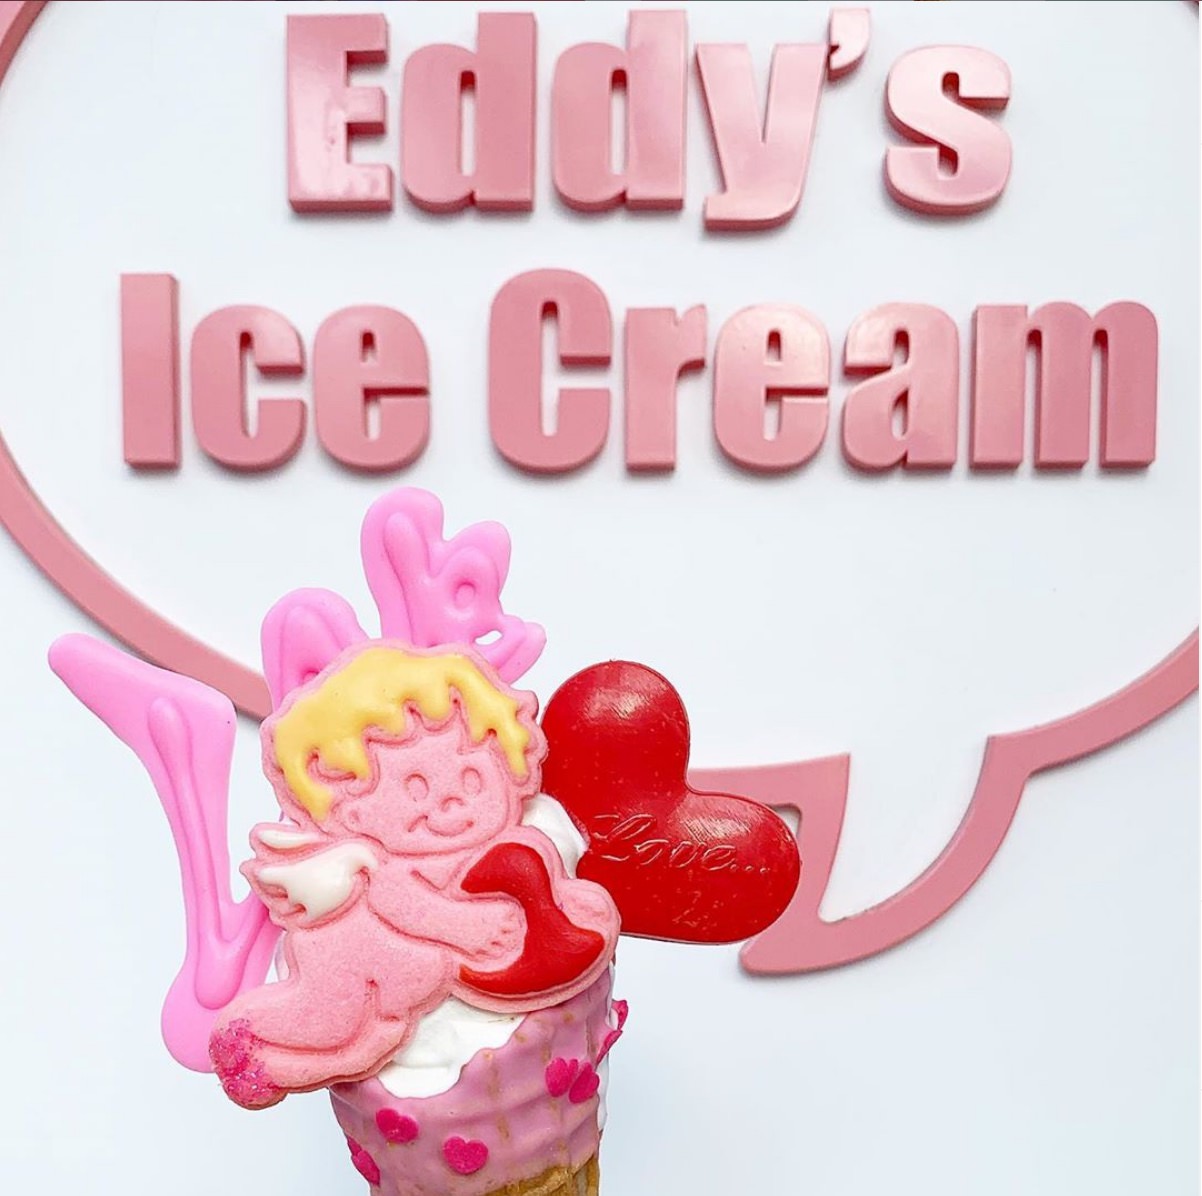 サンリオ けろけろけろっぴ Eddy S Icecream3店舗 6 1よりコラボ開催